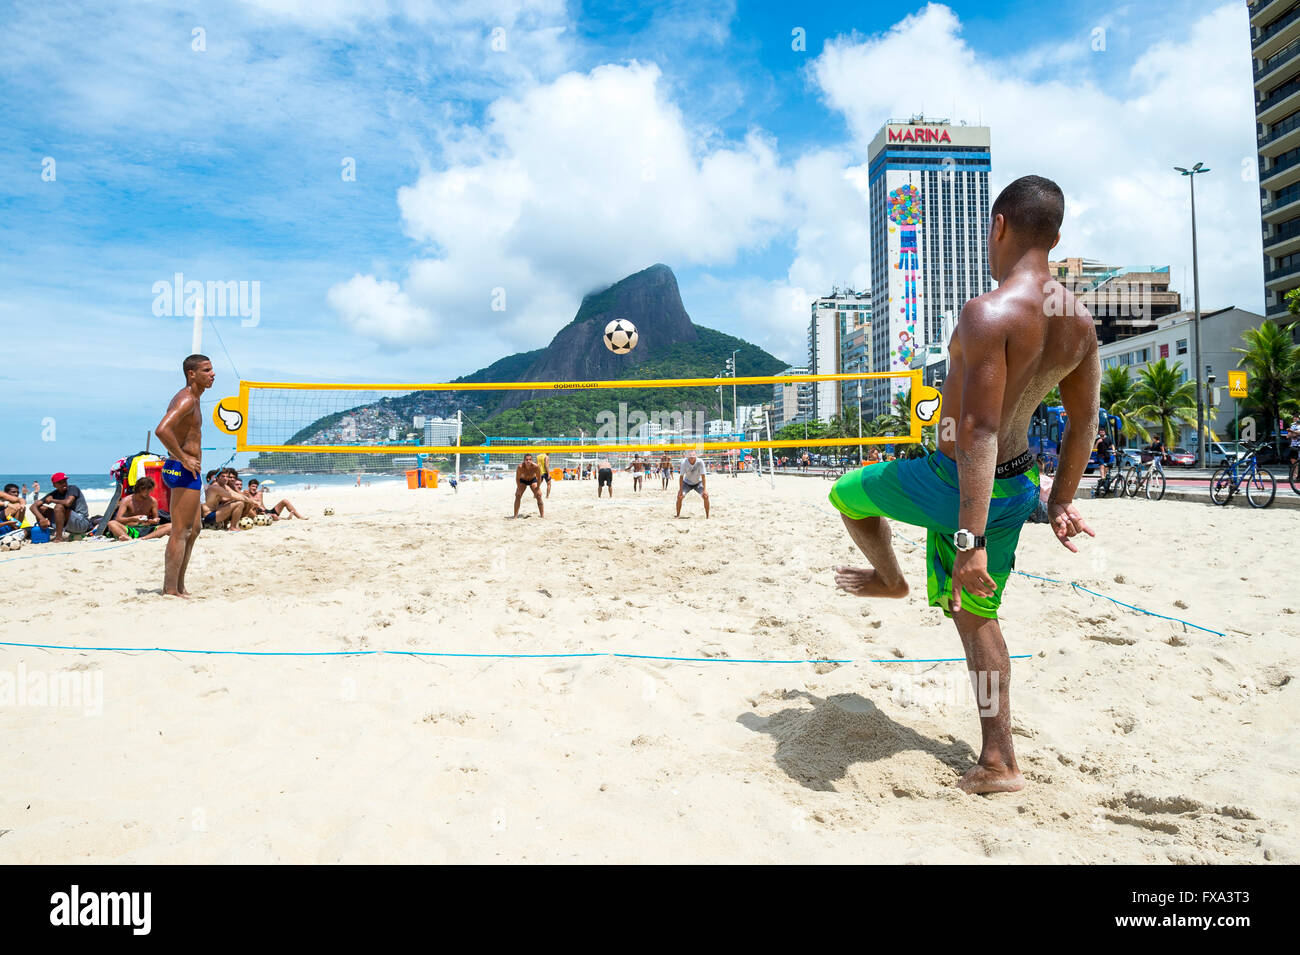 RIO DE JANEIRO - le 17 mars 2016 : jeunes hommes jouent un jeu de footvolley, un sport qui combine le football et volley-ball. Banque D'Images